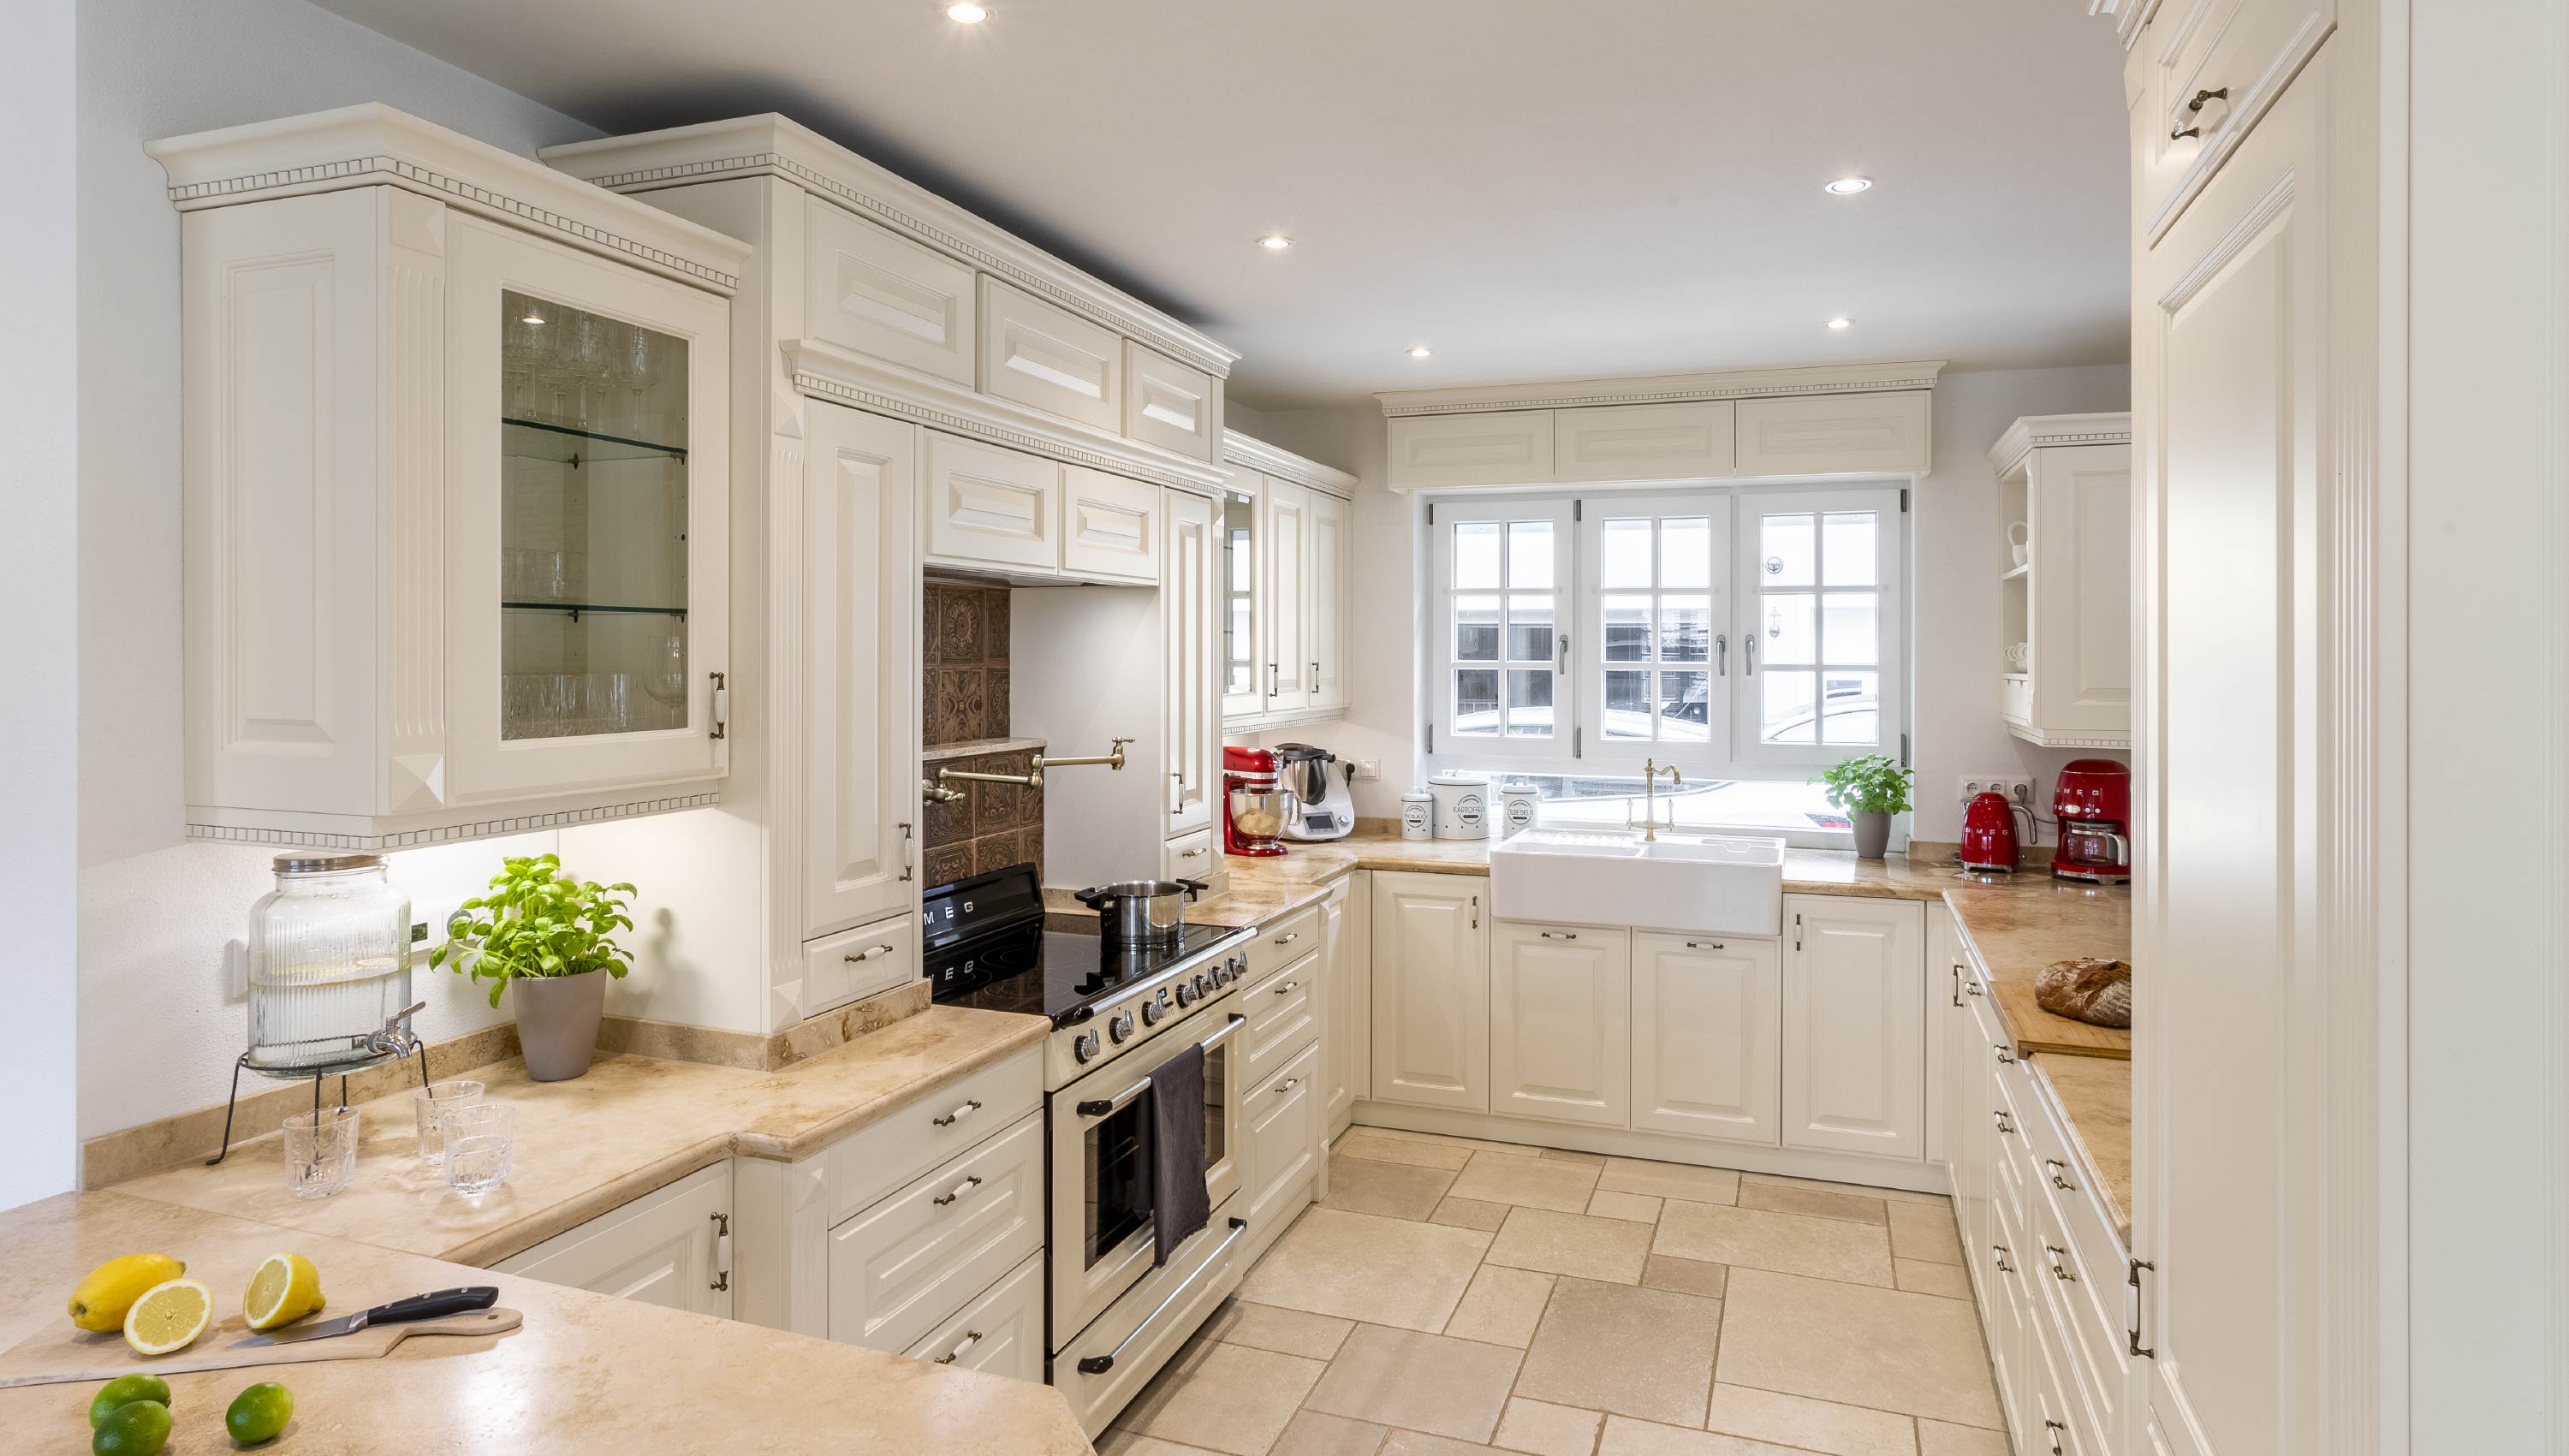 Baumann Küchen - Eine helle hochwertige Landhaus Küche mit weißen Fronten und einer Marmor Arbeitsplatte.